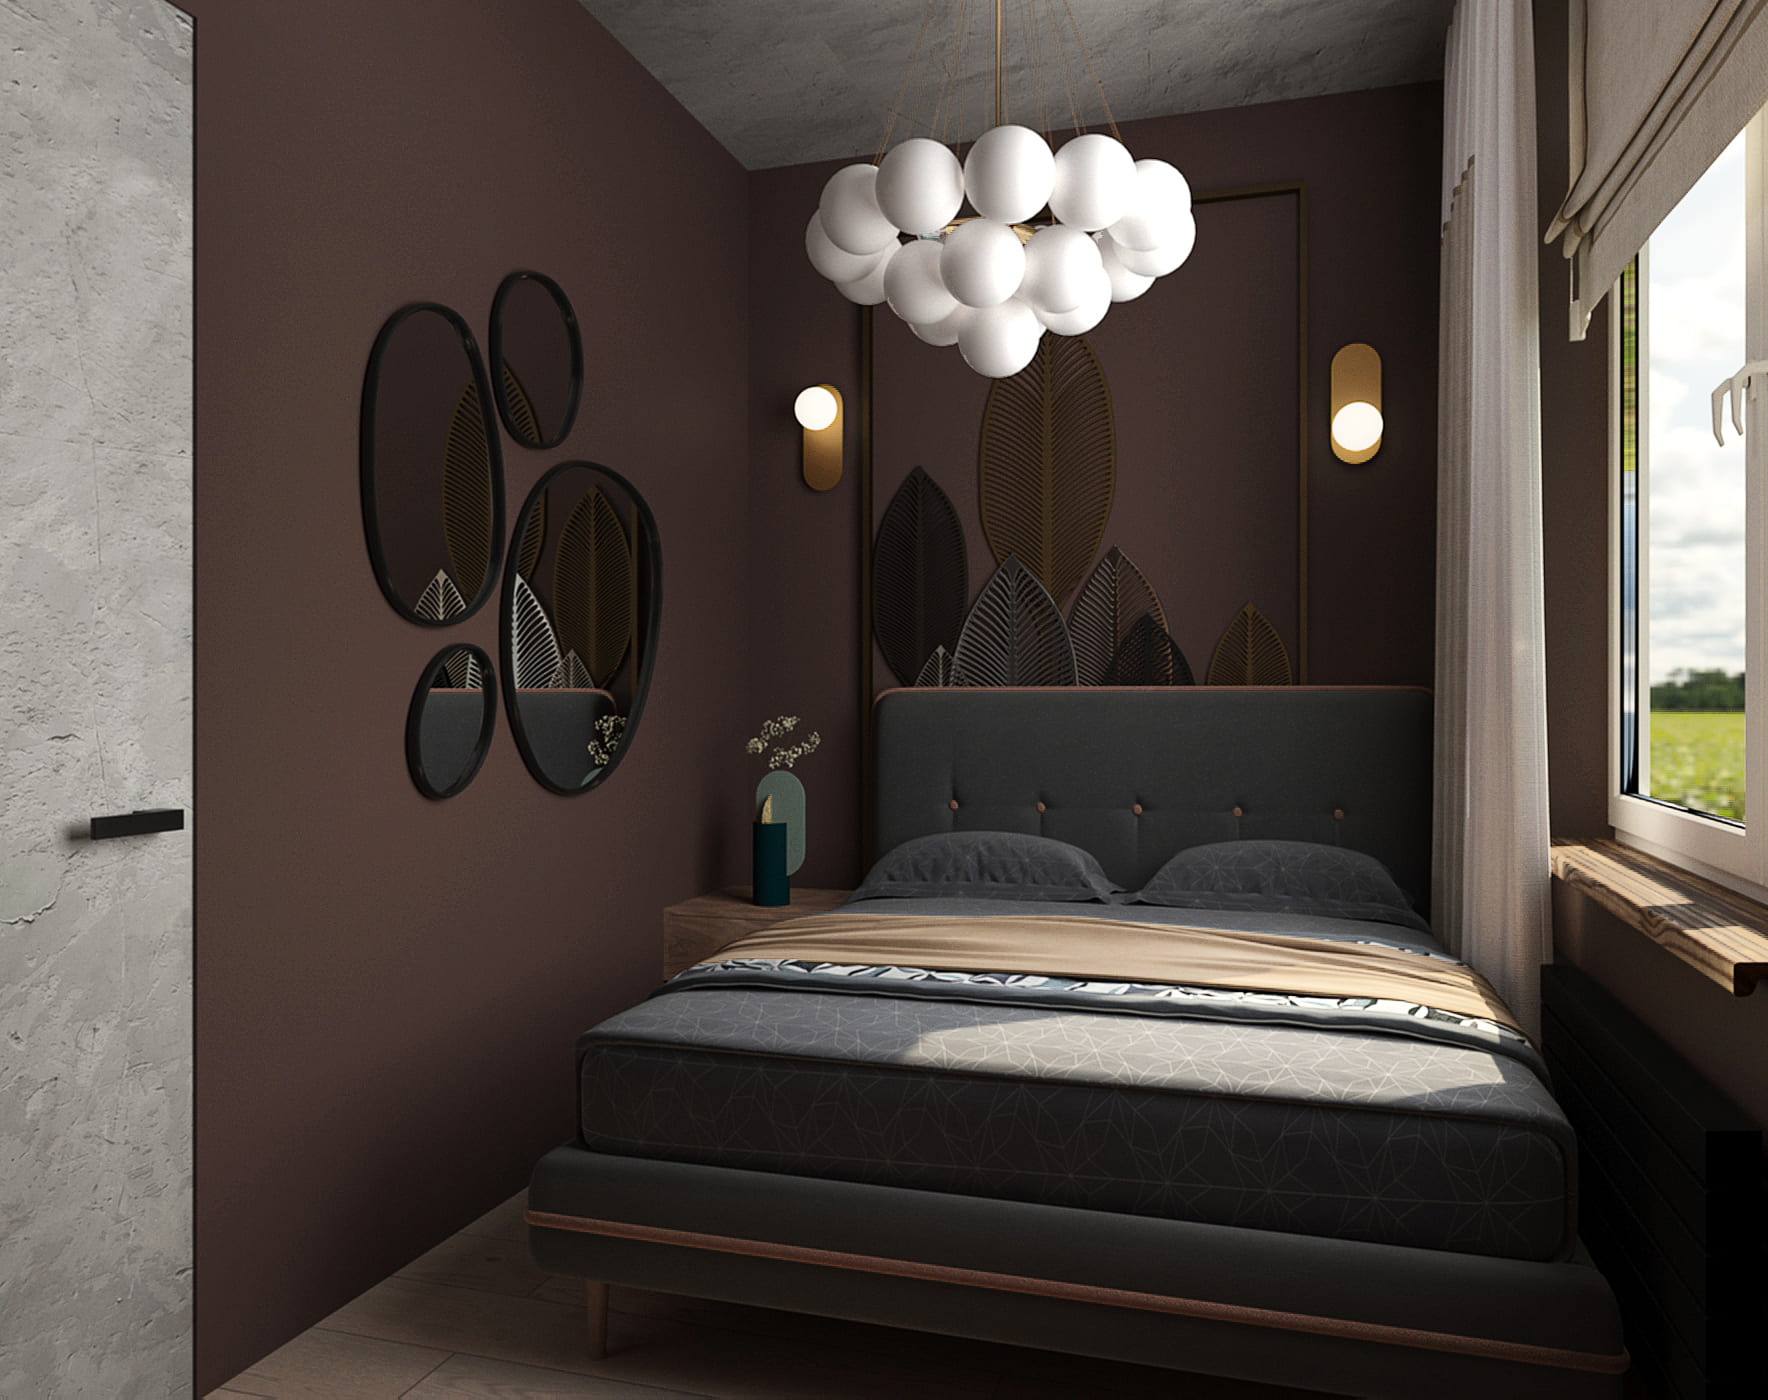 дизайн маленькой тёмной спальни с шоколадным оттенком, люстрой с шарами и панно в виде зеркал на стене